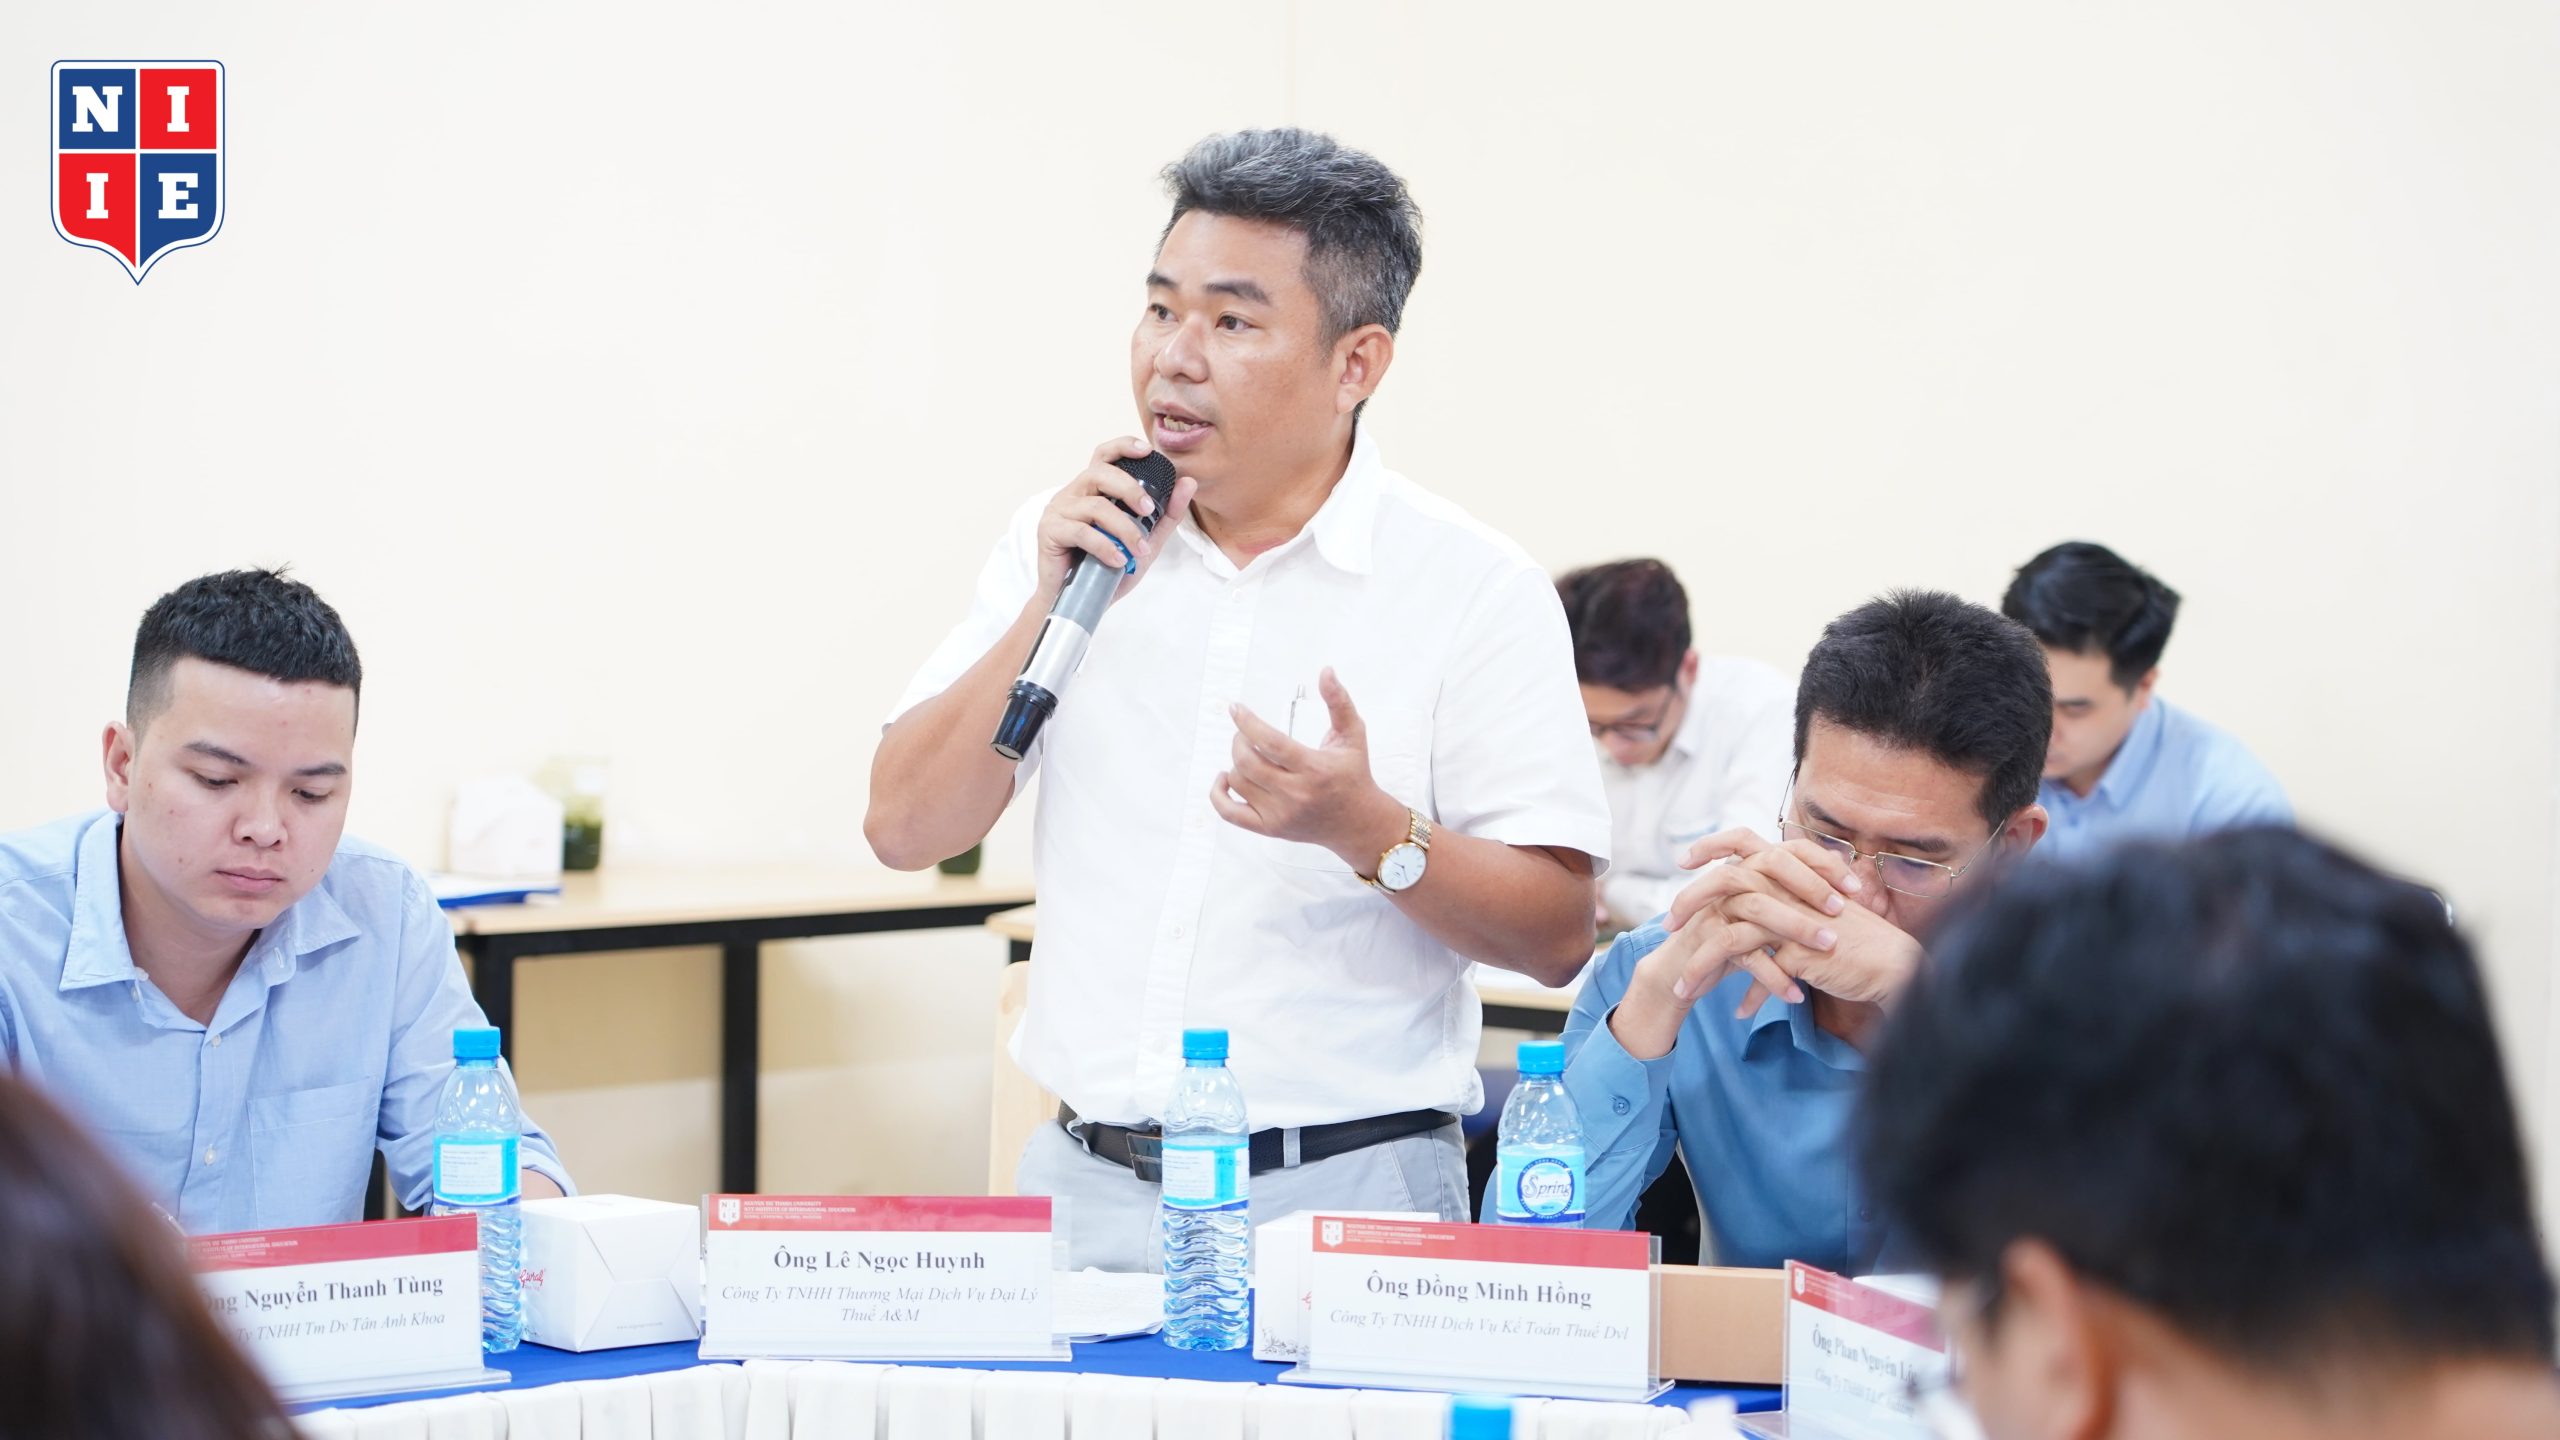 Ông Lê Ngọc Huynh, Giám đốc Công ty TNHH TM - DV Đại lý Thuế A&M đã dành lời khen cho chương trình đào tạo của Viện với môn Đạo đức trong ngành Kế toán